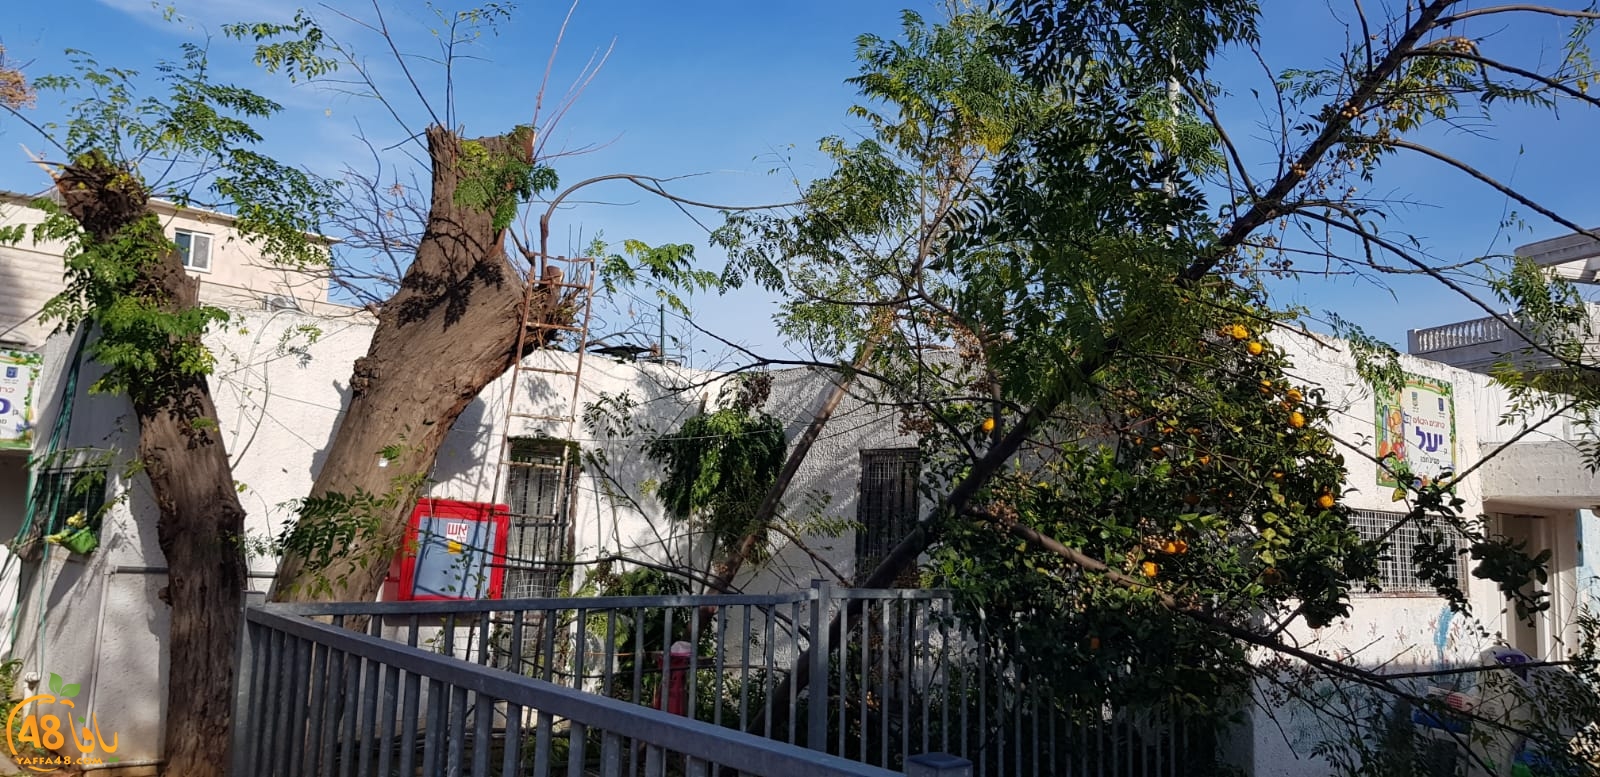  اللد: المطالبة بإزالة الأشجار بعد قطعها من ساحة حضانة مانجو